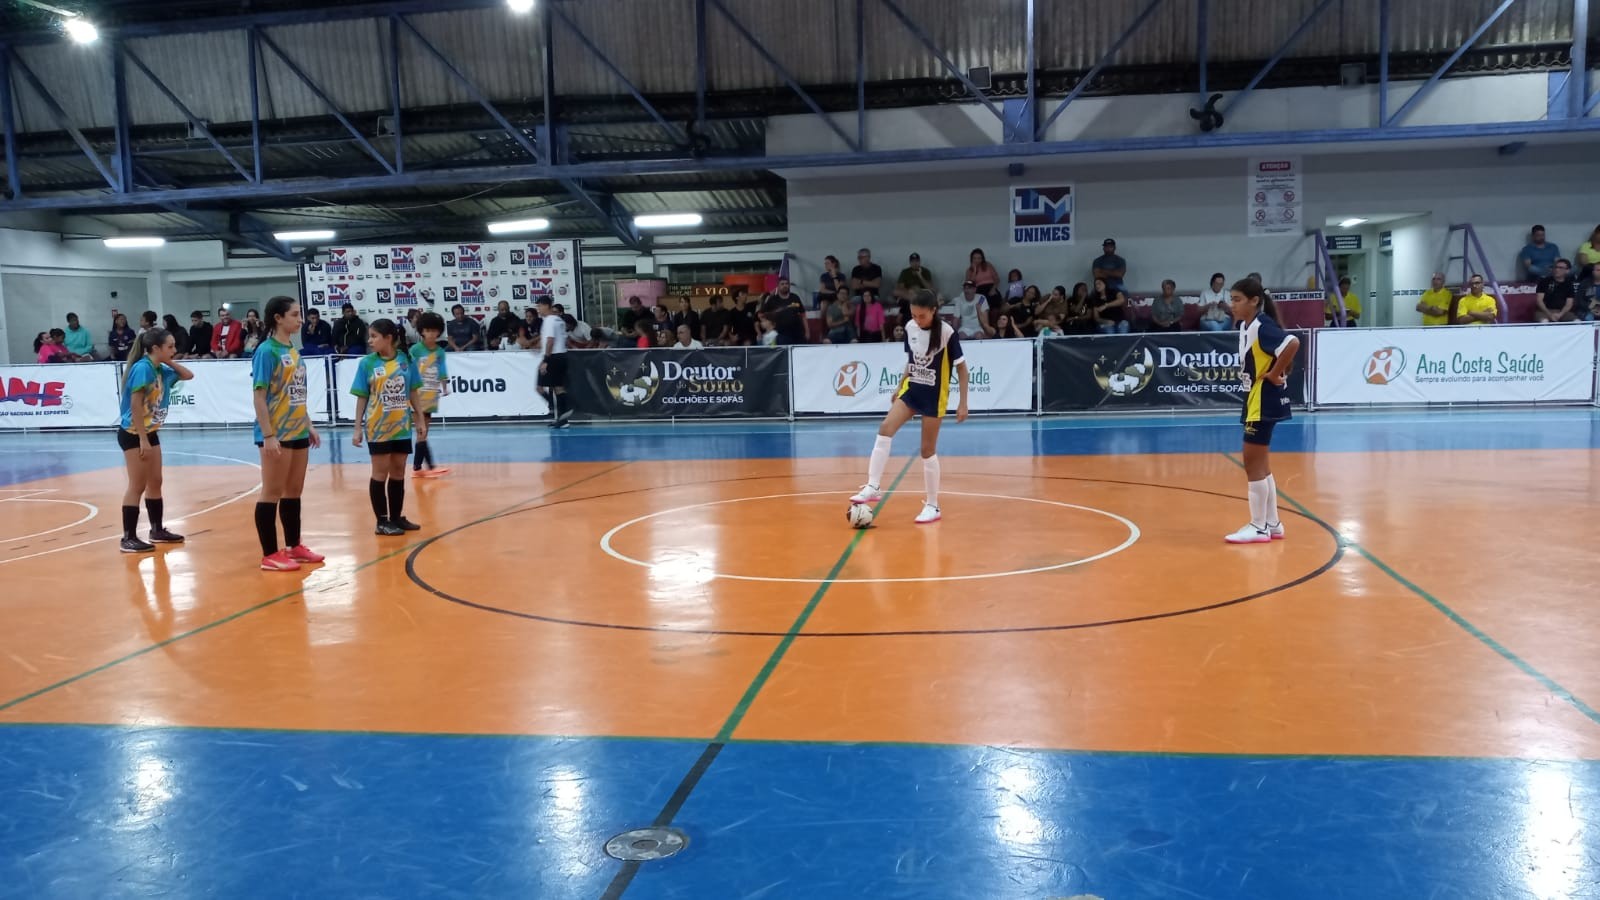 Jean Piaget ganha e empata com Lupe Picasso na liderança do grupo 4 da 20ª Copa TV Tribuna de Futsal